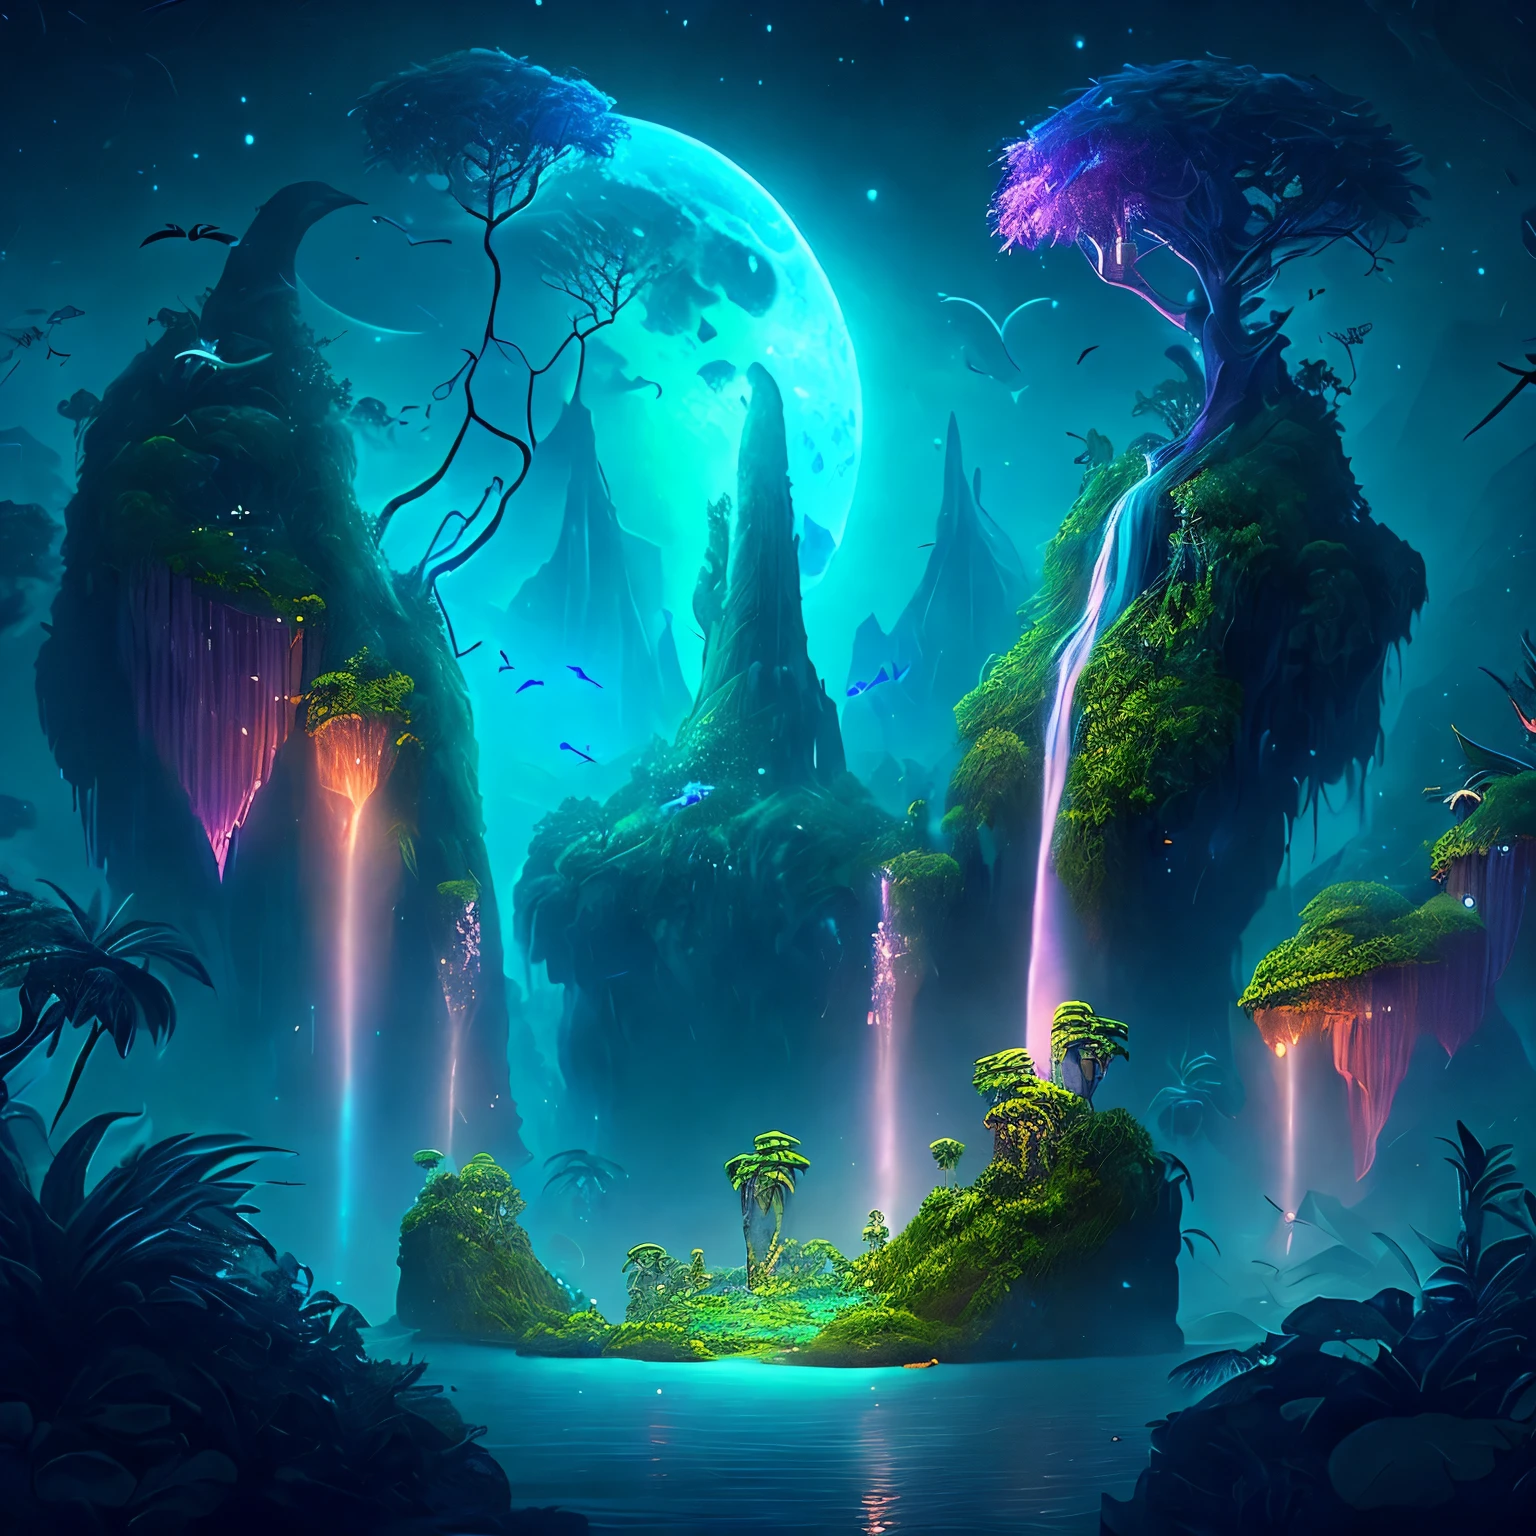 月光下的迷人奇幻丛林, 被茂密植被覆盖的巨大浮岛, 瀑布, 以及在黑夜中翱翔的发光生物, 数字艺术作品